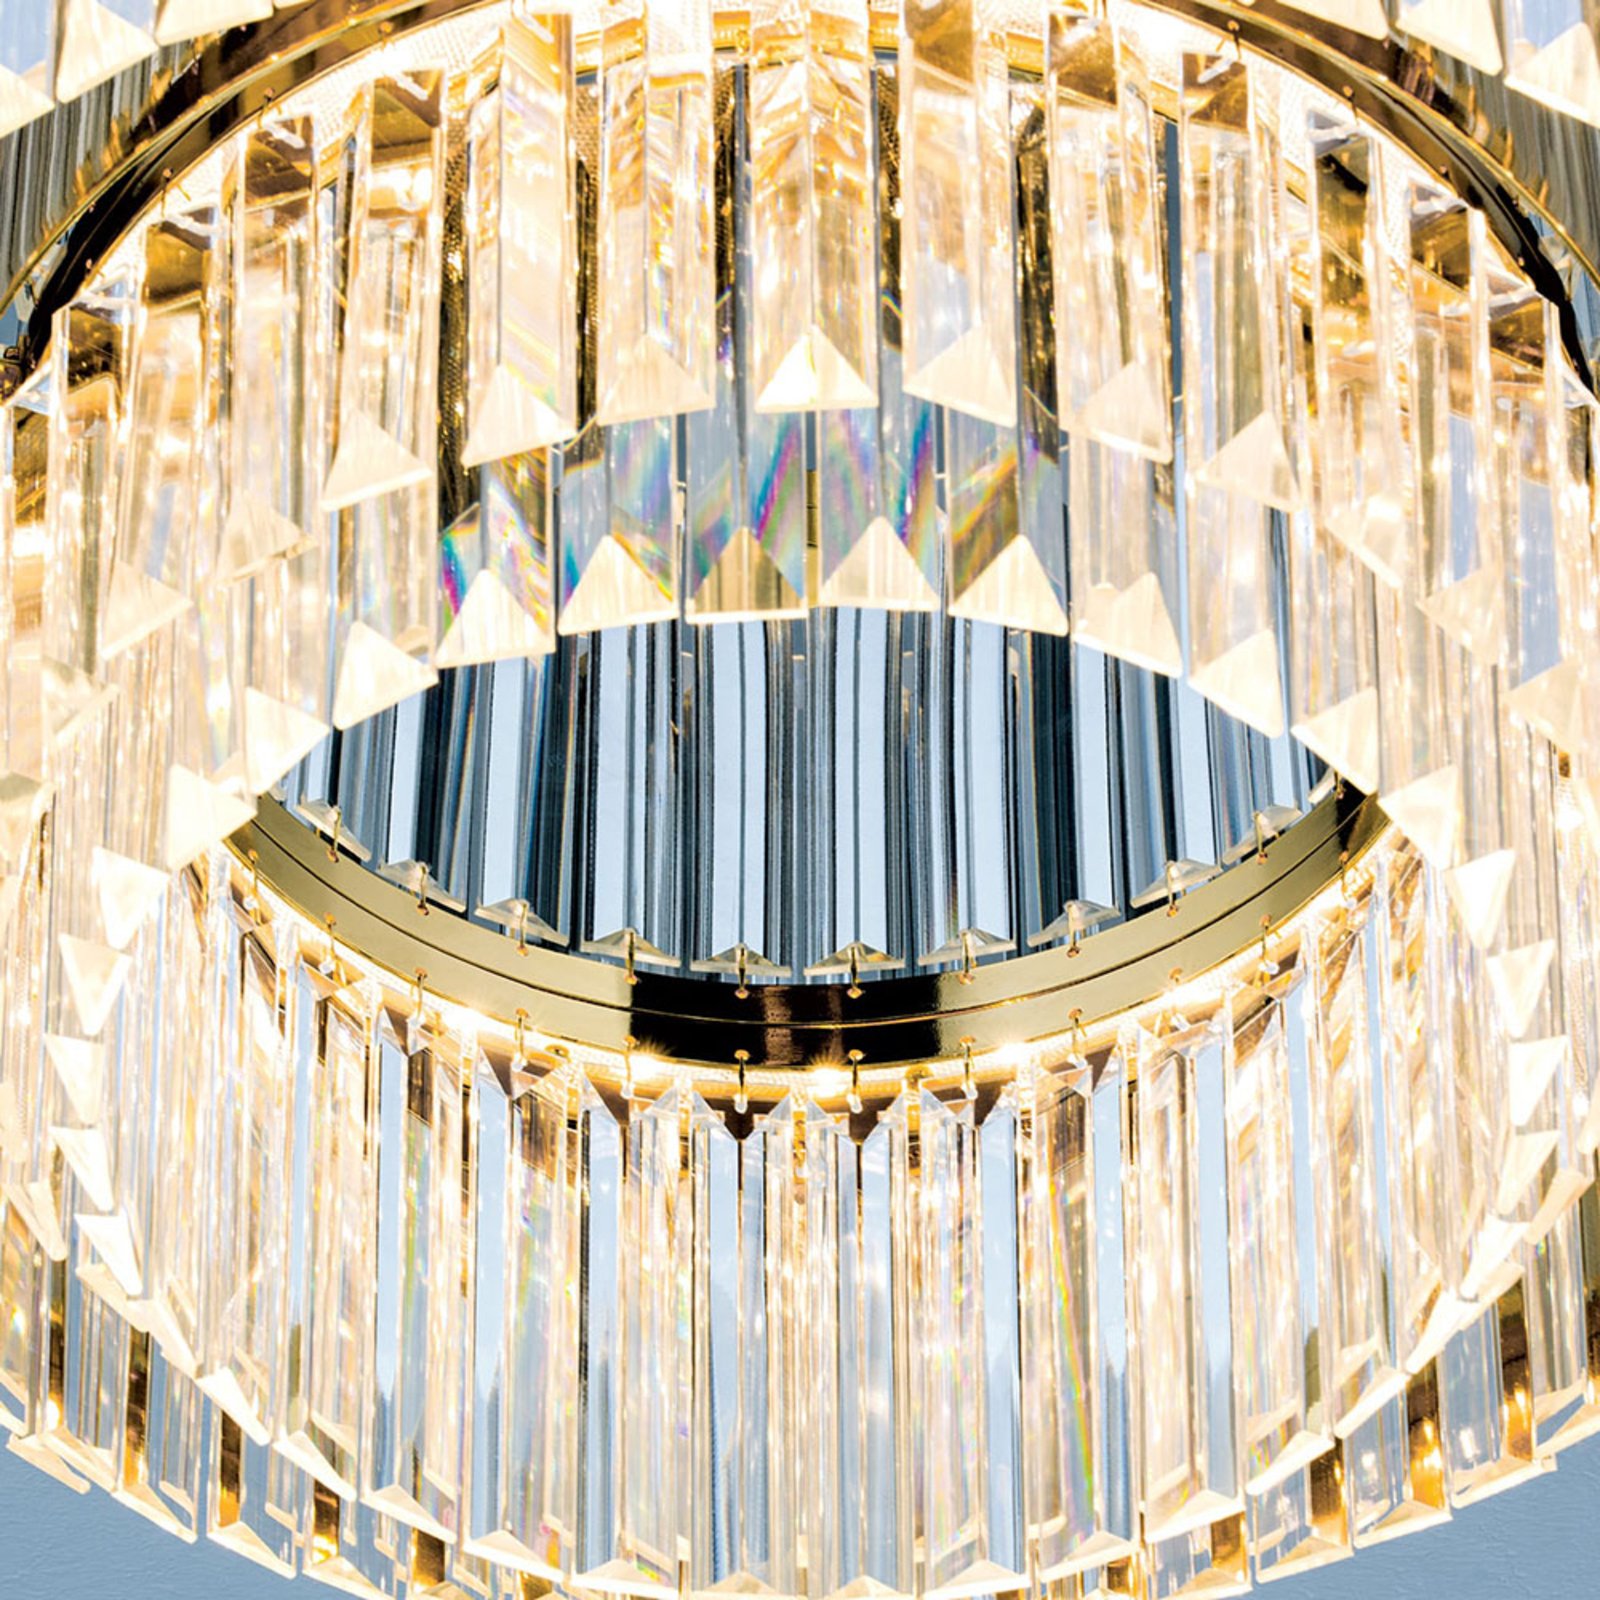 LED stropna svetilka Prism, zlata, Ø 55 cm